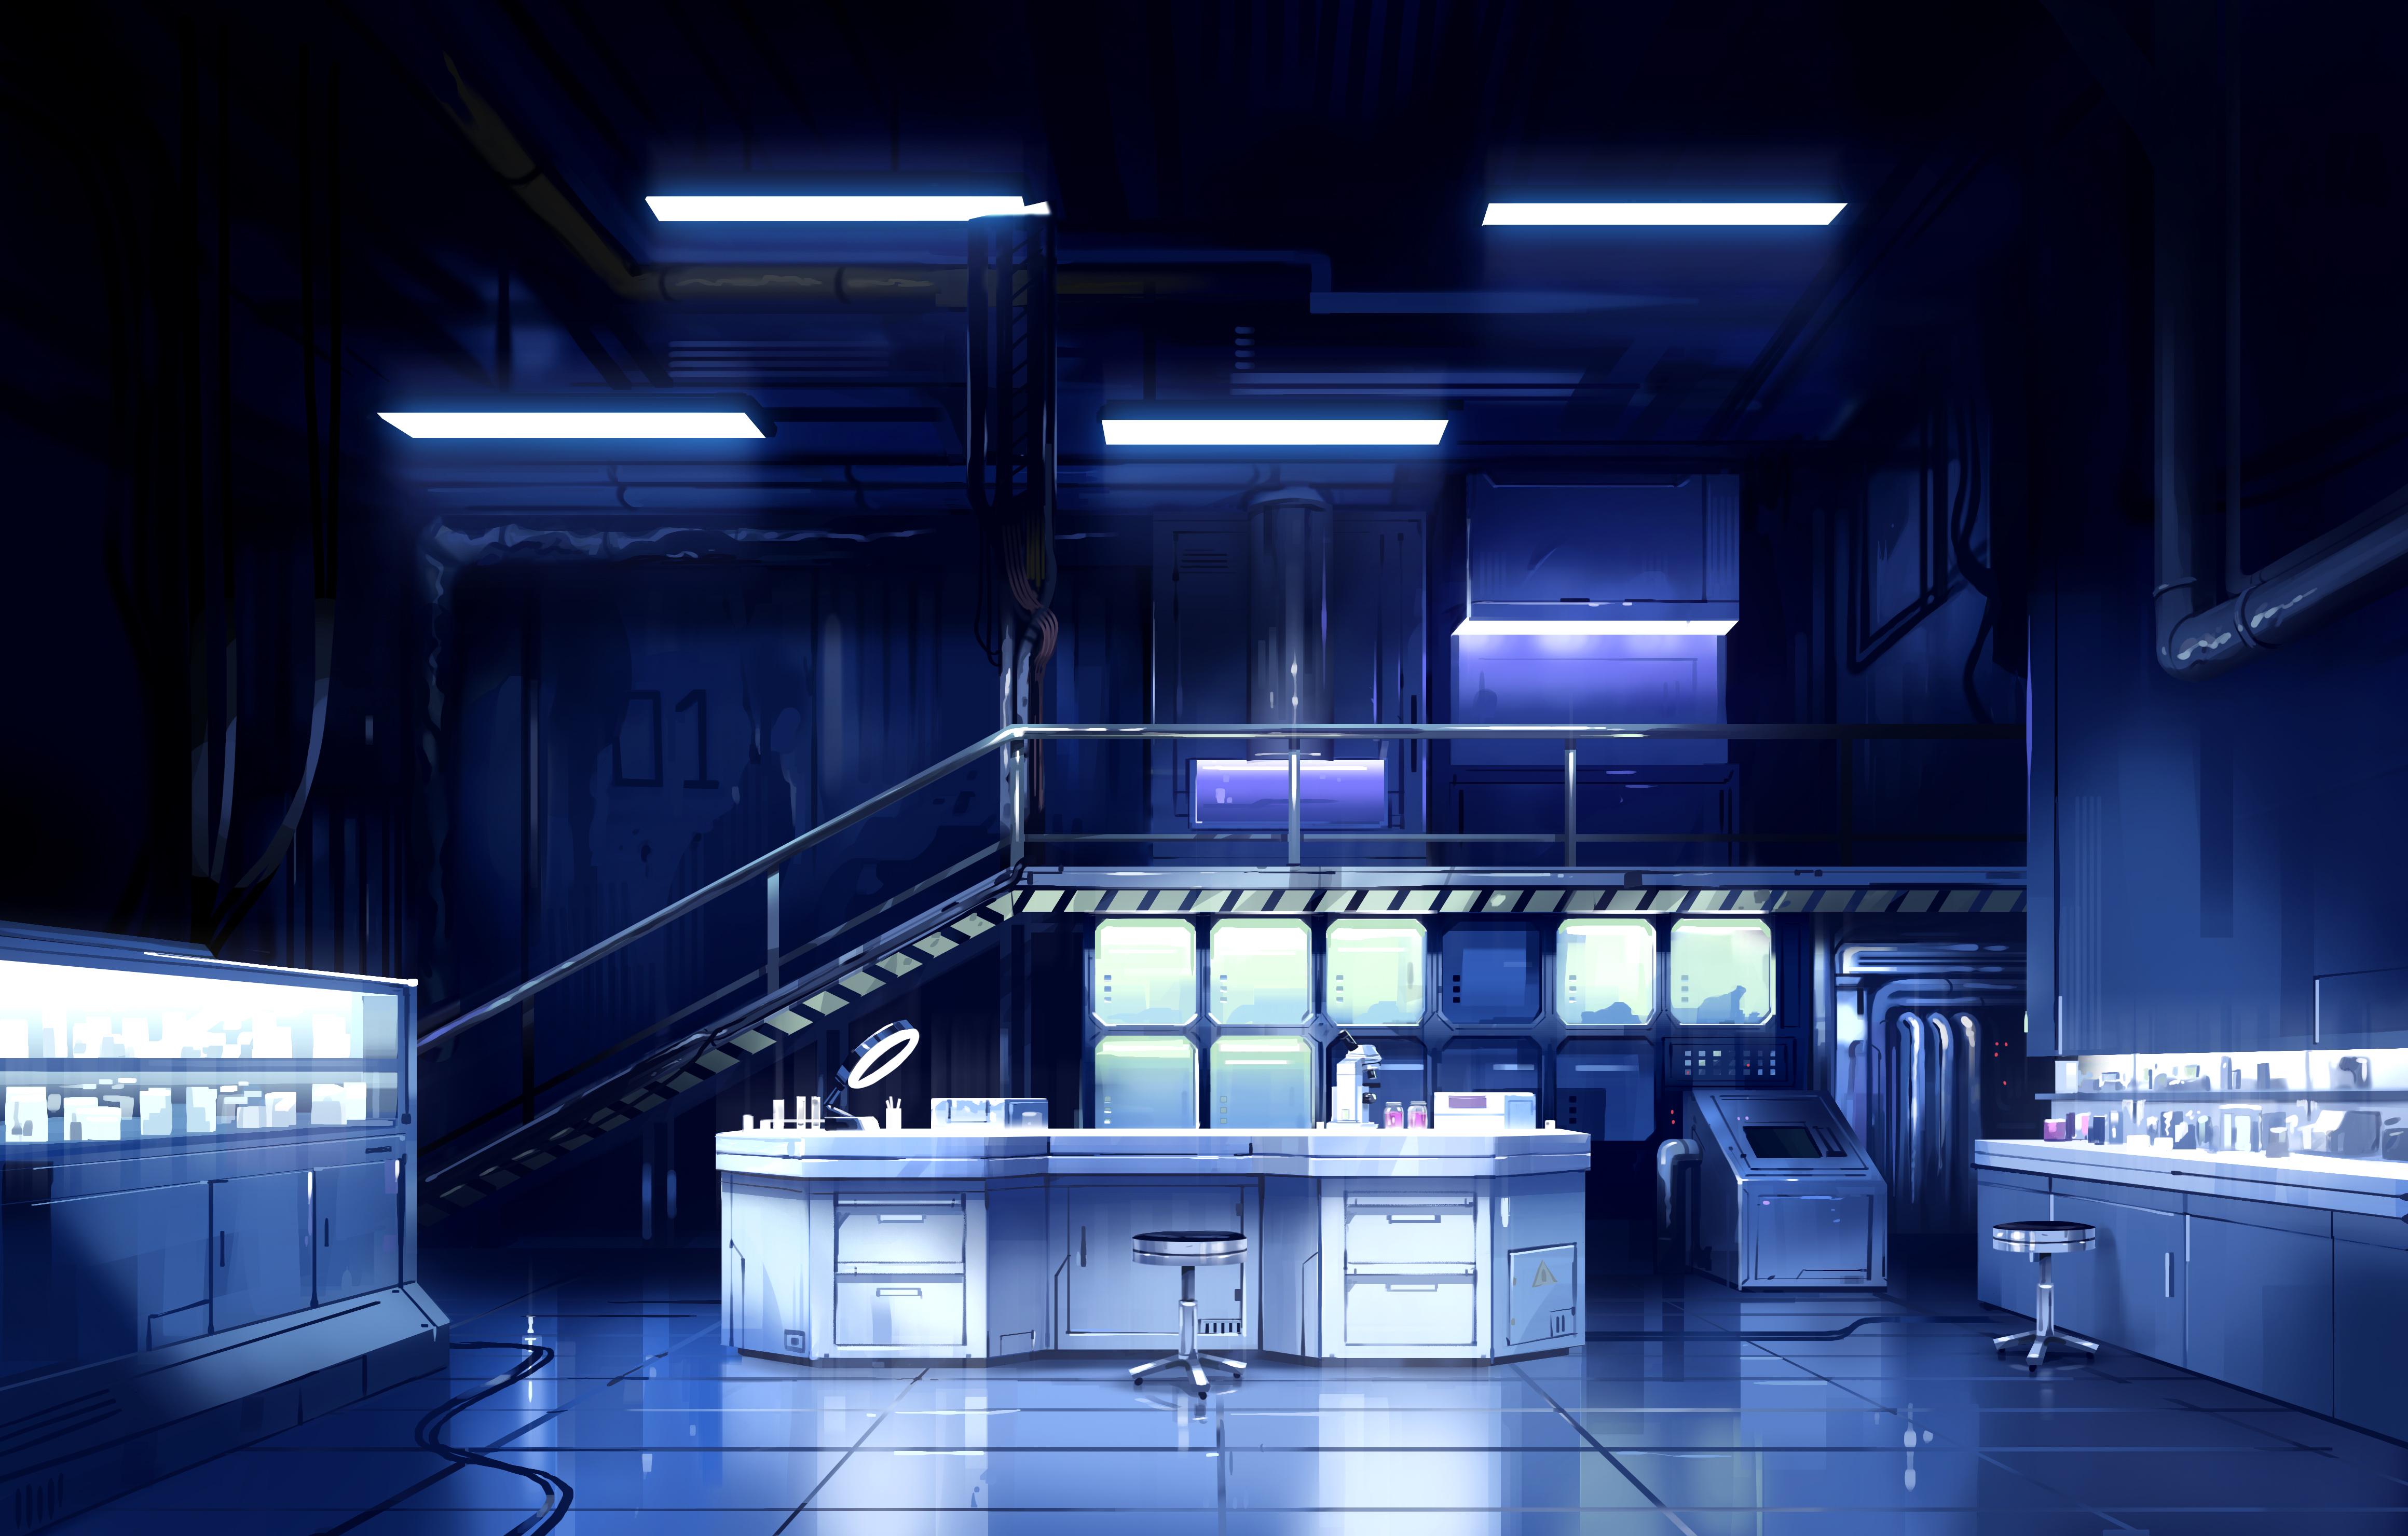 A futuristic laboratory